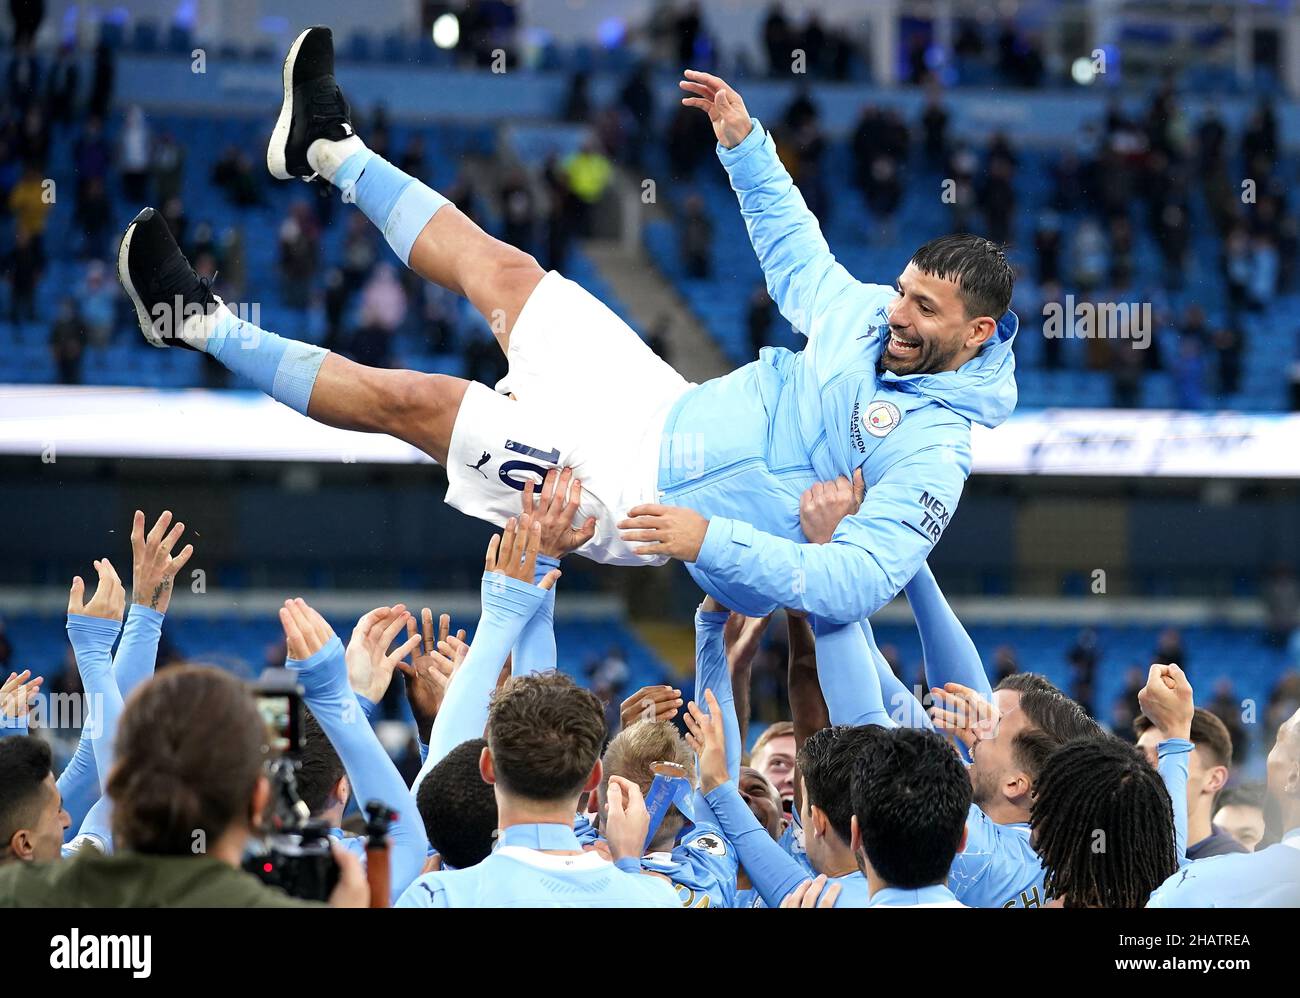 Foto del file datata 23-05-2021 del Manchester City Sergio Aguero è gettato in aria dai suoi compagni di squadra dopo aver vinto il trofeo della Premier League. Data di emissione: Mercoledì 15 dicembre 2021. Foto Stock